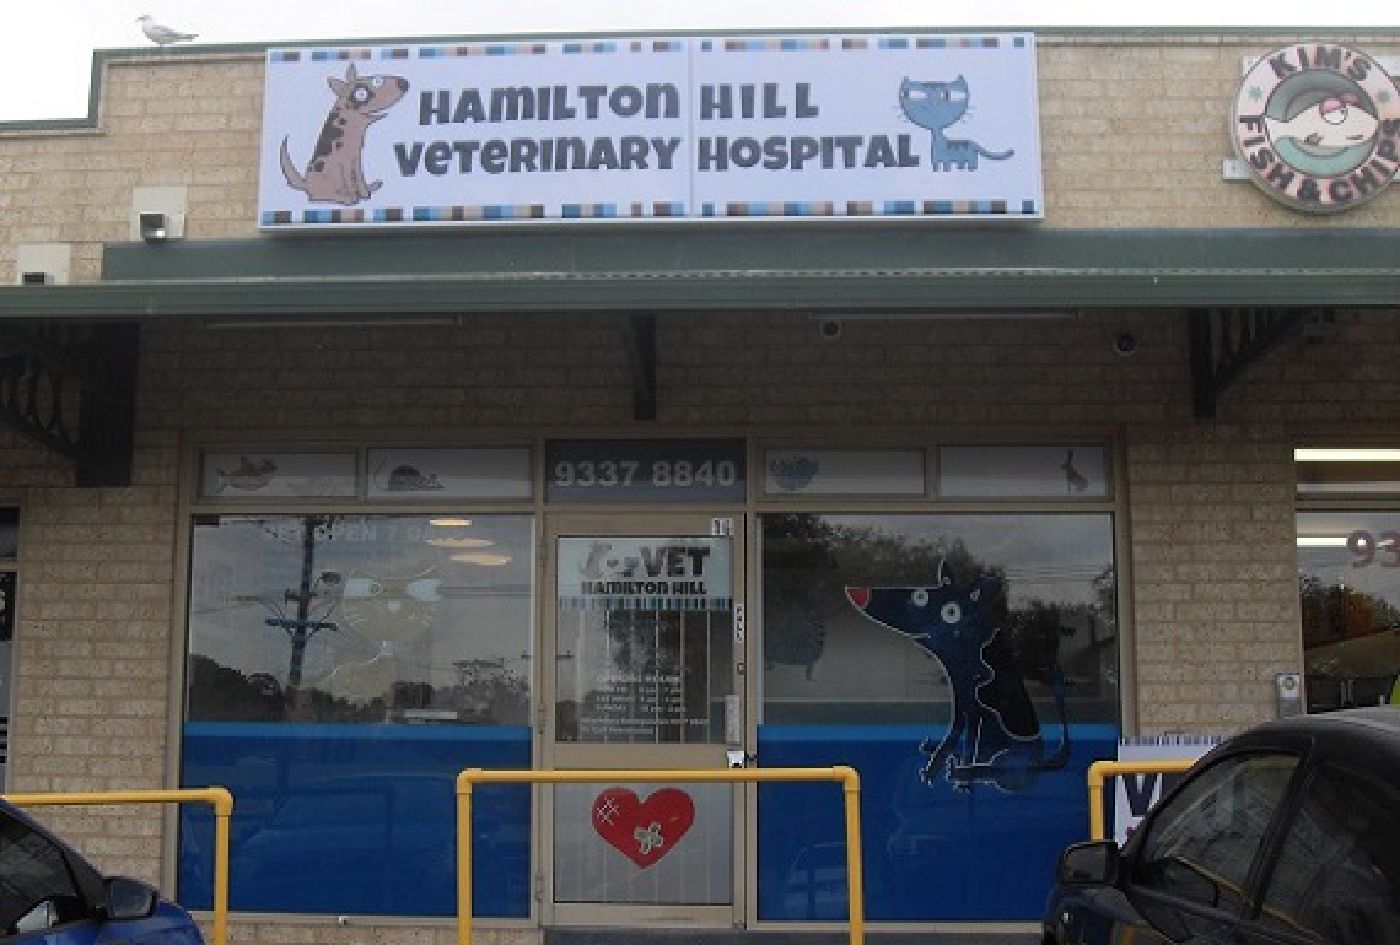 Hamilton Hill Veterinary Hospital